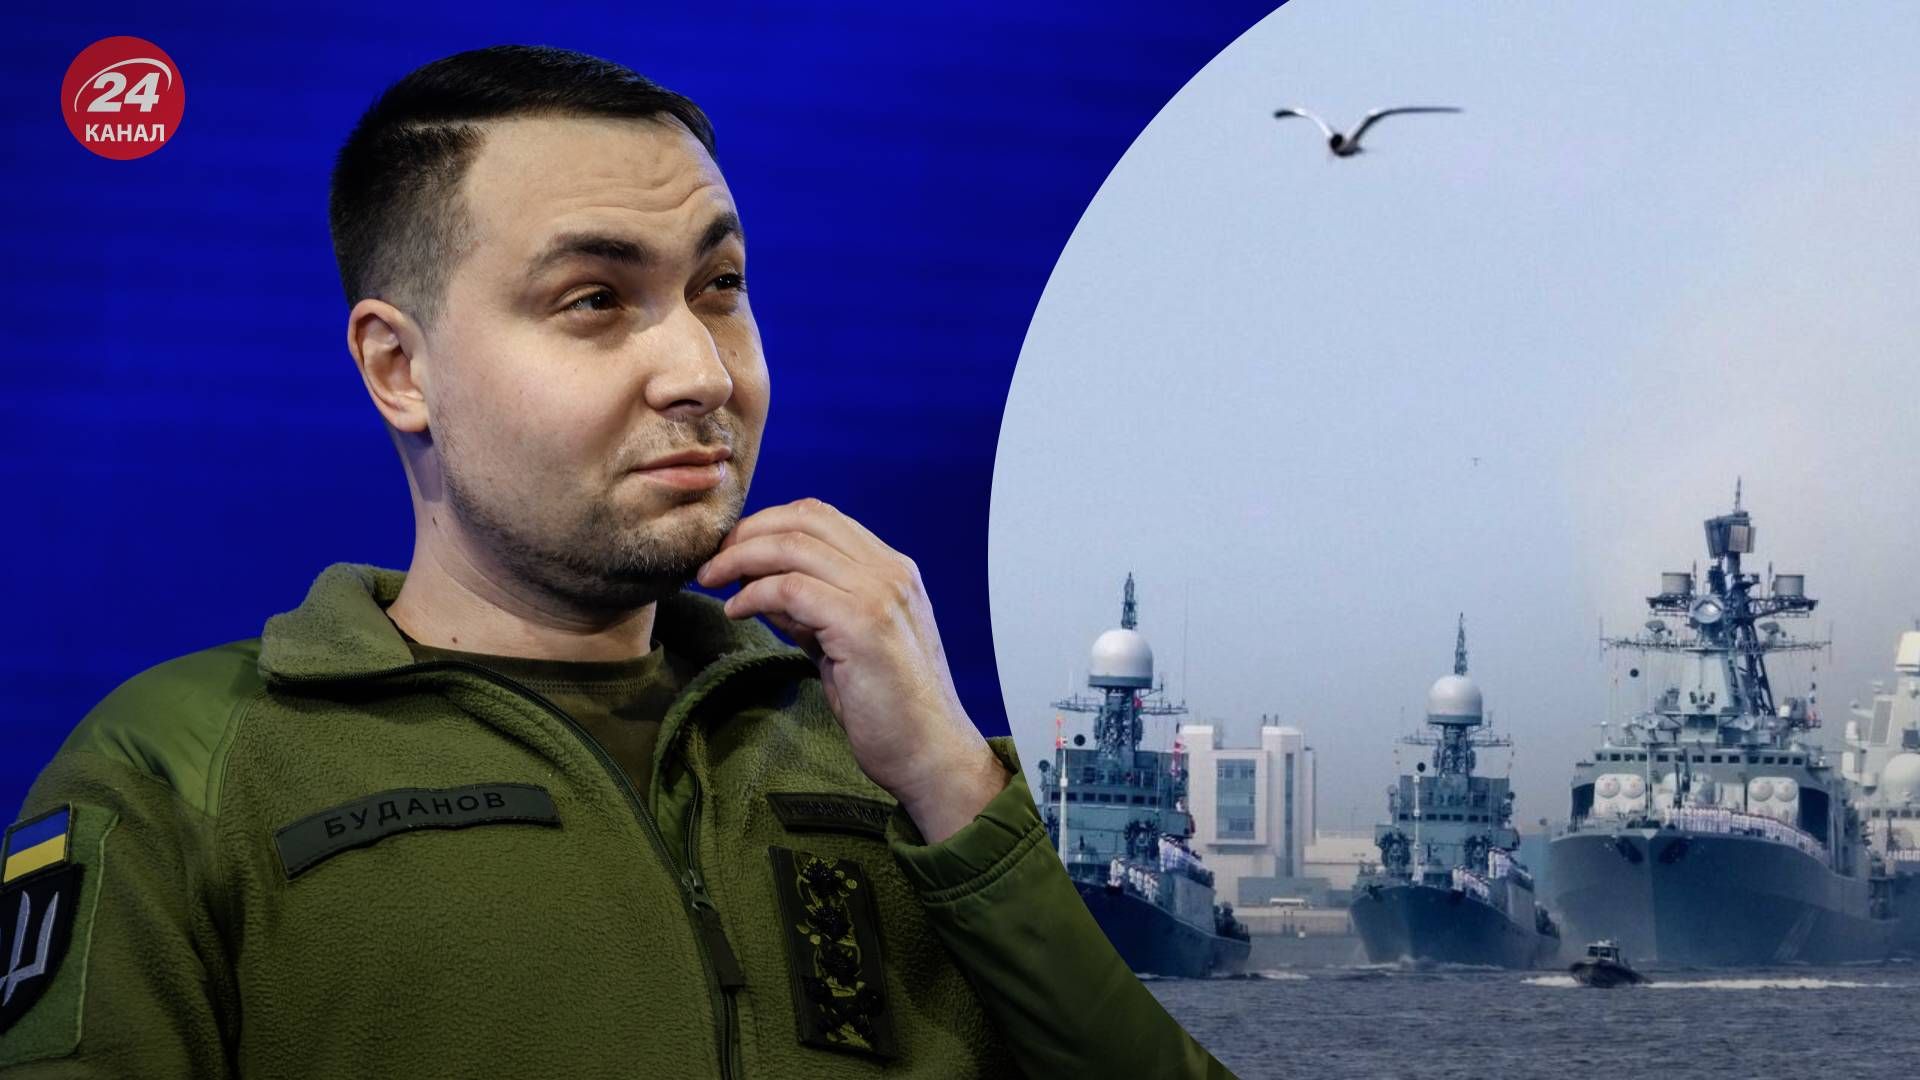 Буданов рассказал, что его хобби связано с Черноморским флотом России - 24 Канал